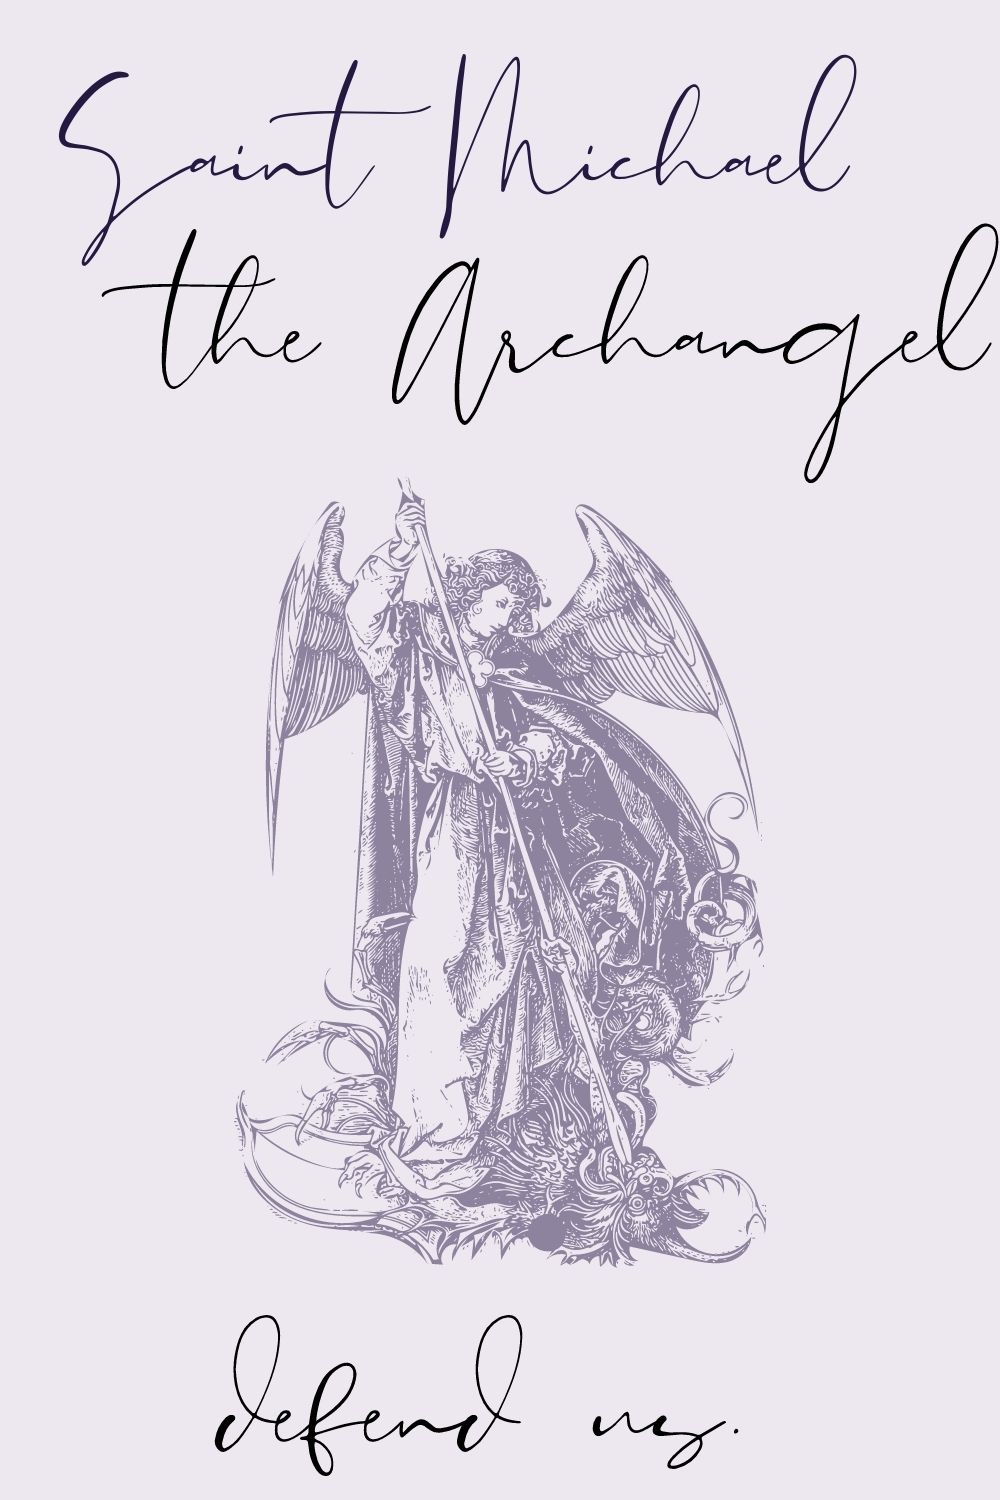 michaelmas-saint michael the archangel defend us